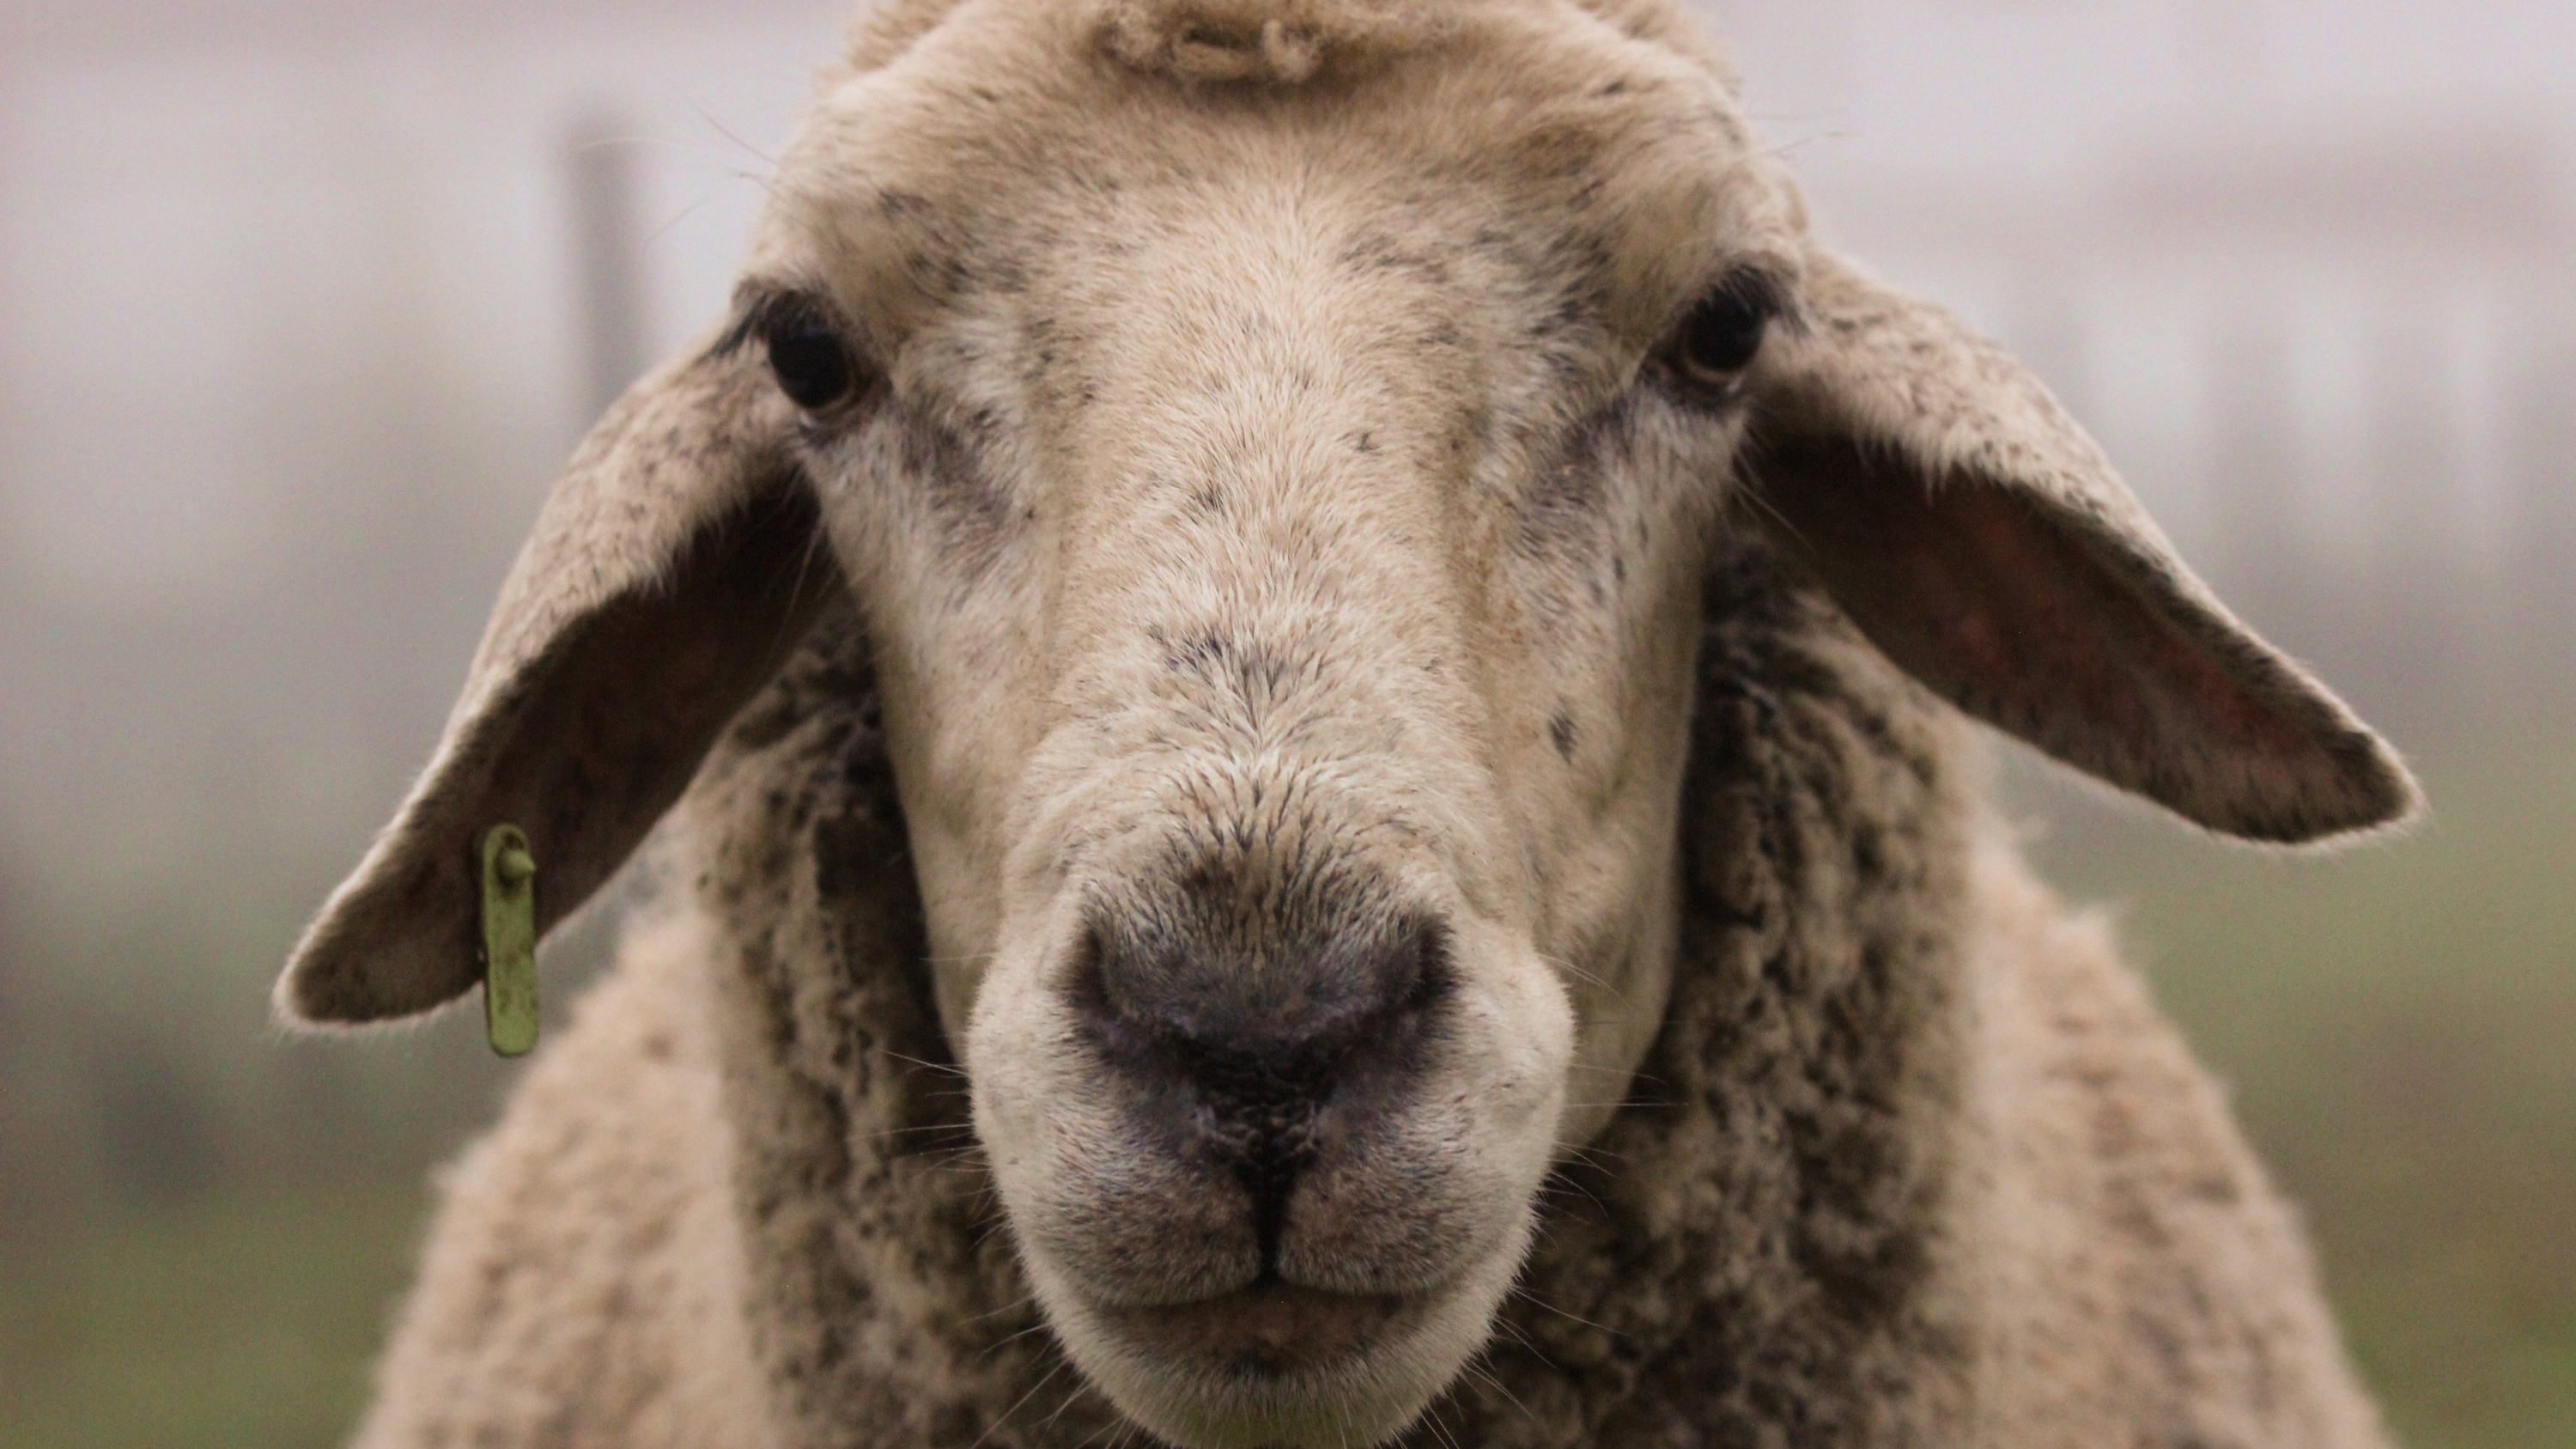 Sheep up close staring at camera